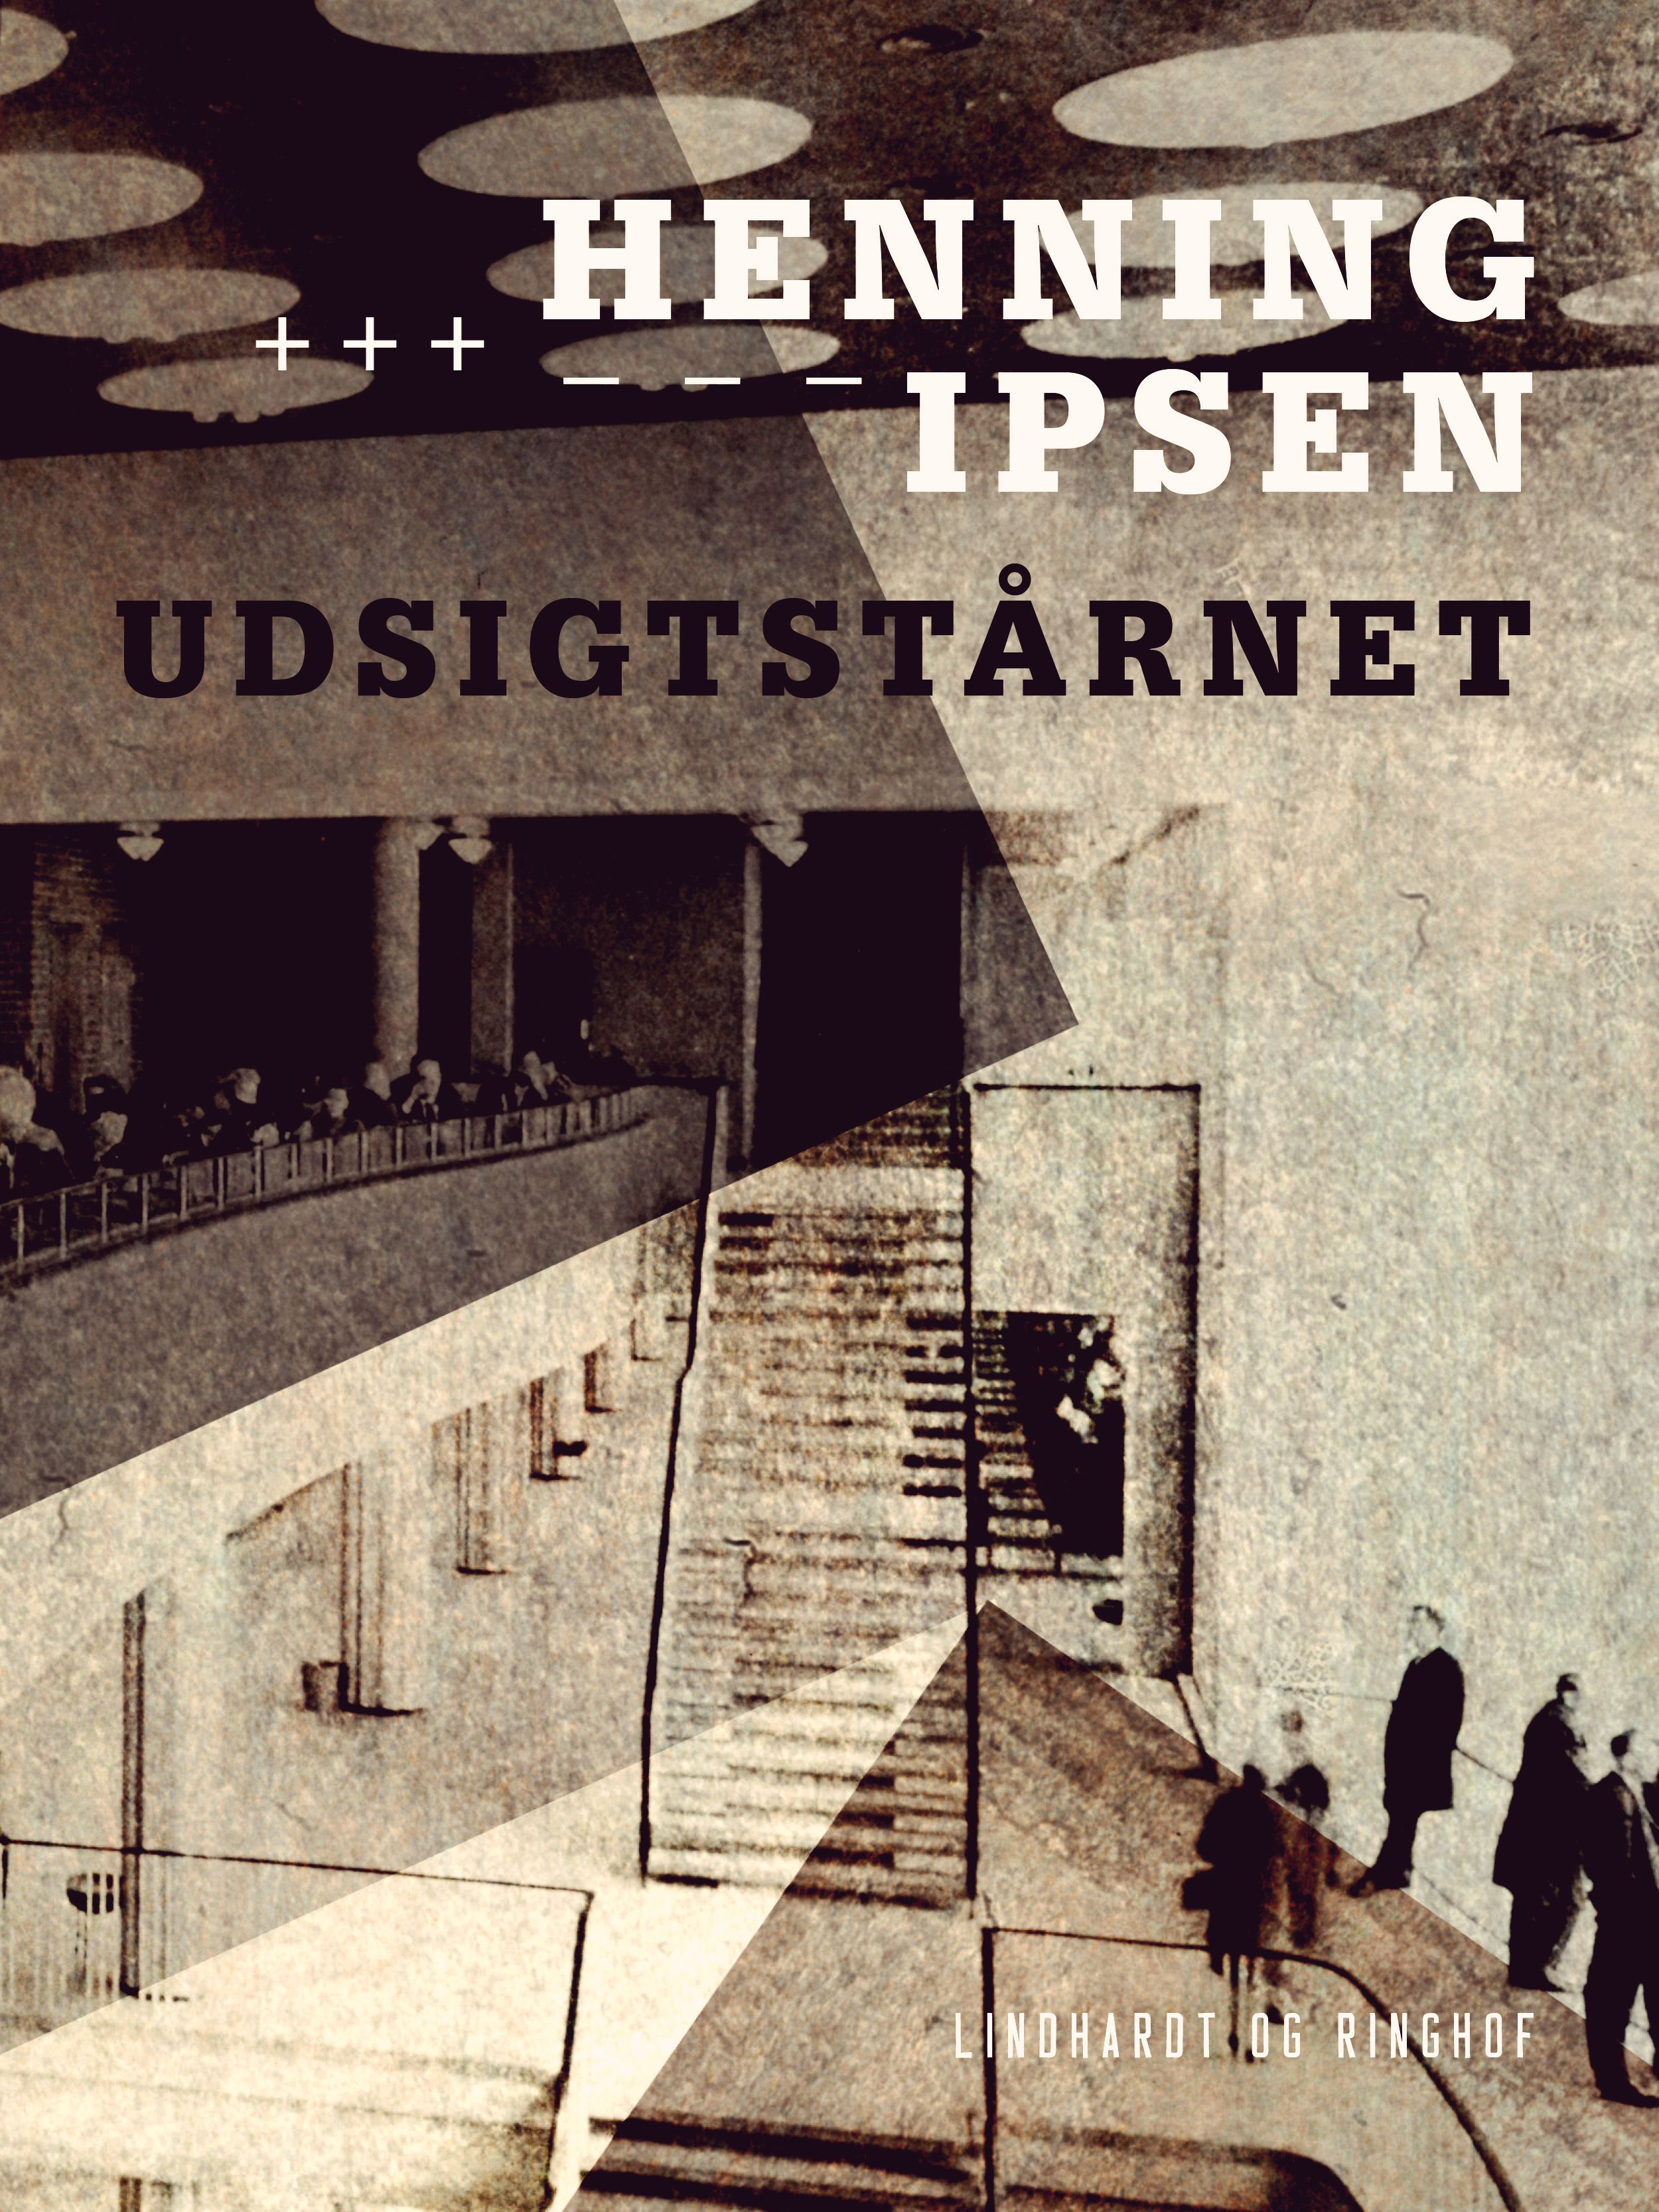 Udsigtstårnet, eBook by Henning Ipsen